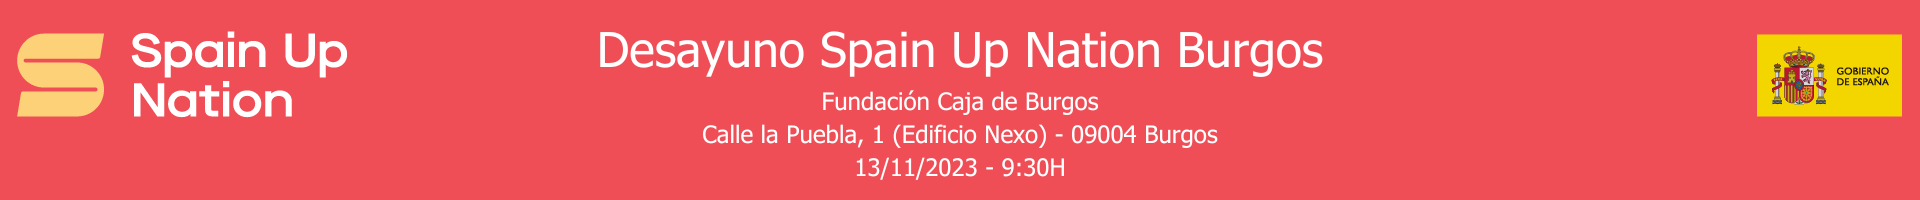 Desayuno Spain Up Nation Burgos, Fundación Caja de Burgos - 13/11/2023 - 9:30h